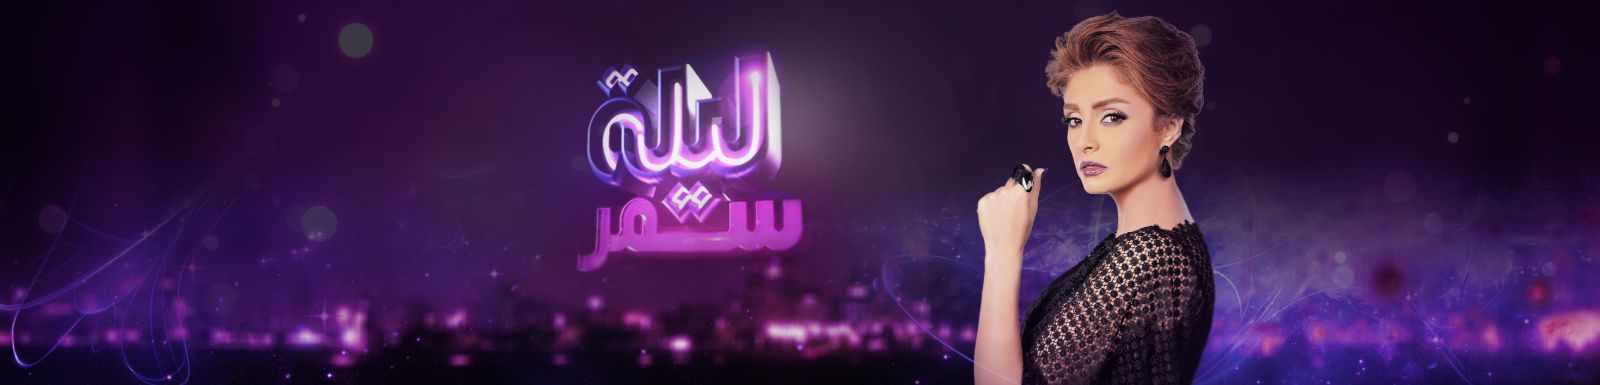 فكرة برنامج ليلة سمر 2015 على قناة Mbc مصر 2